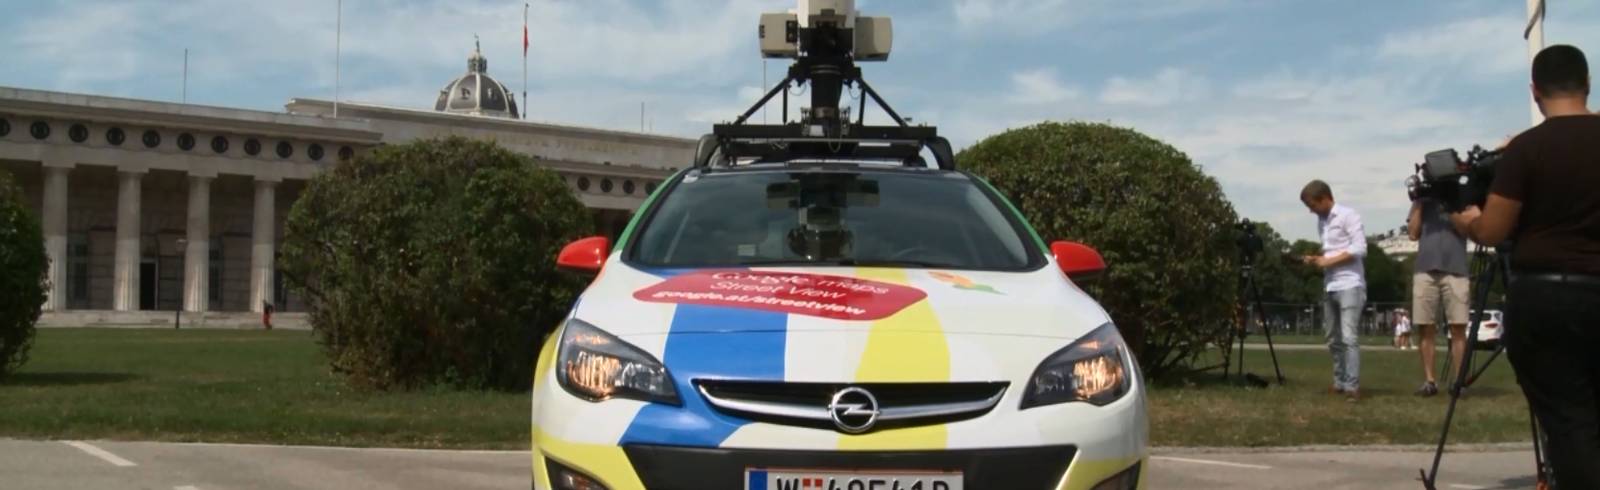 Ab jetzt mit Google virtuell durch Wiens Straßen